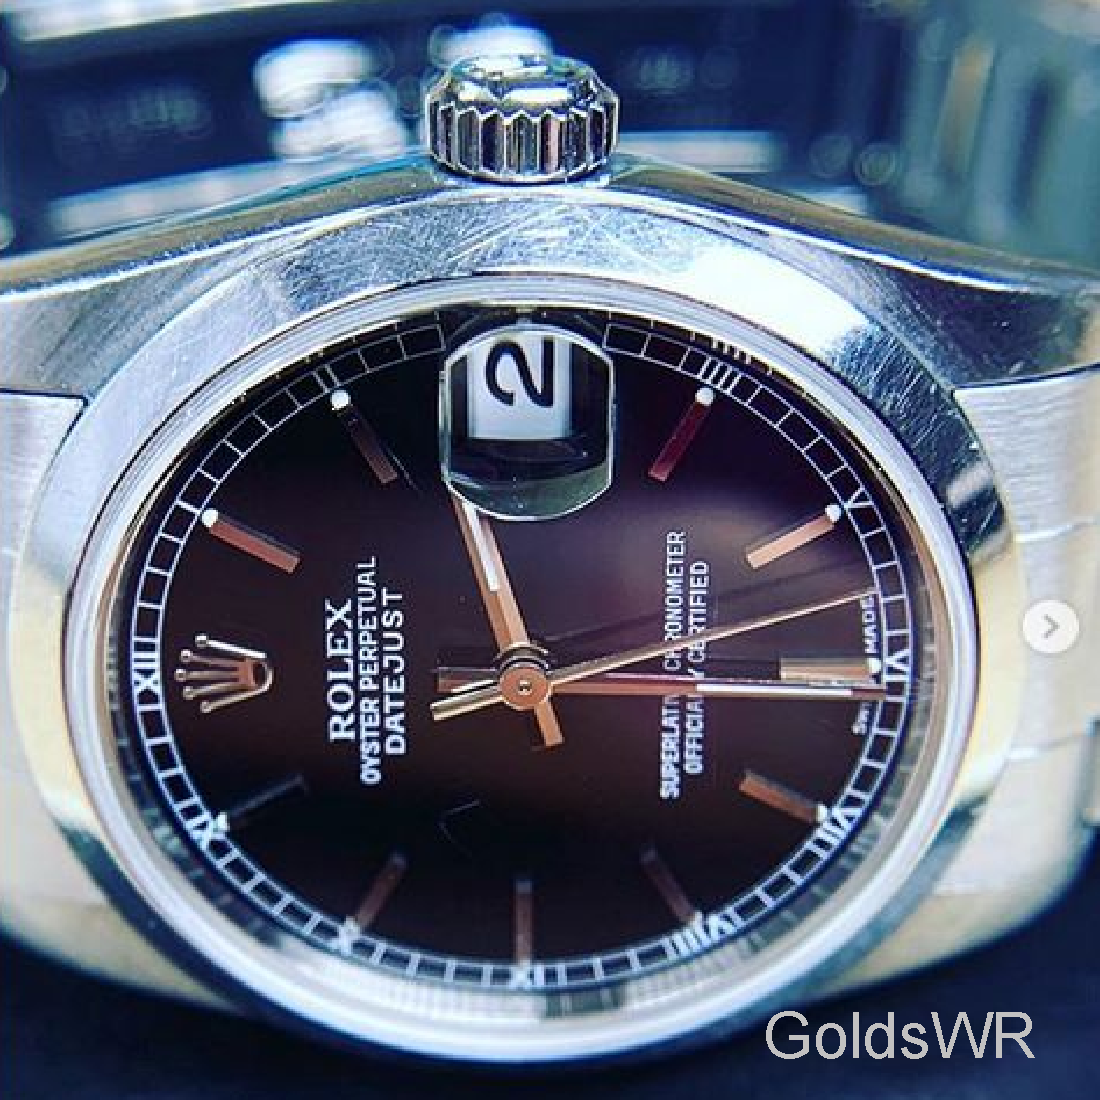 Rolex watch pressure test